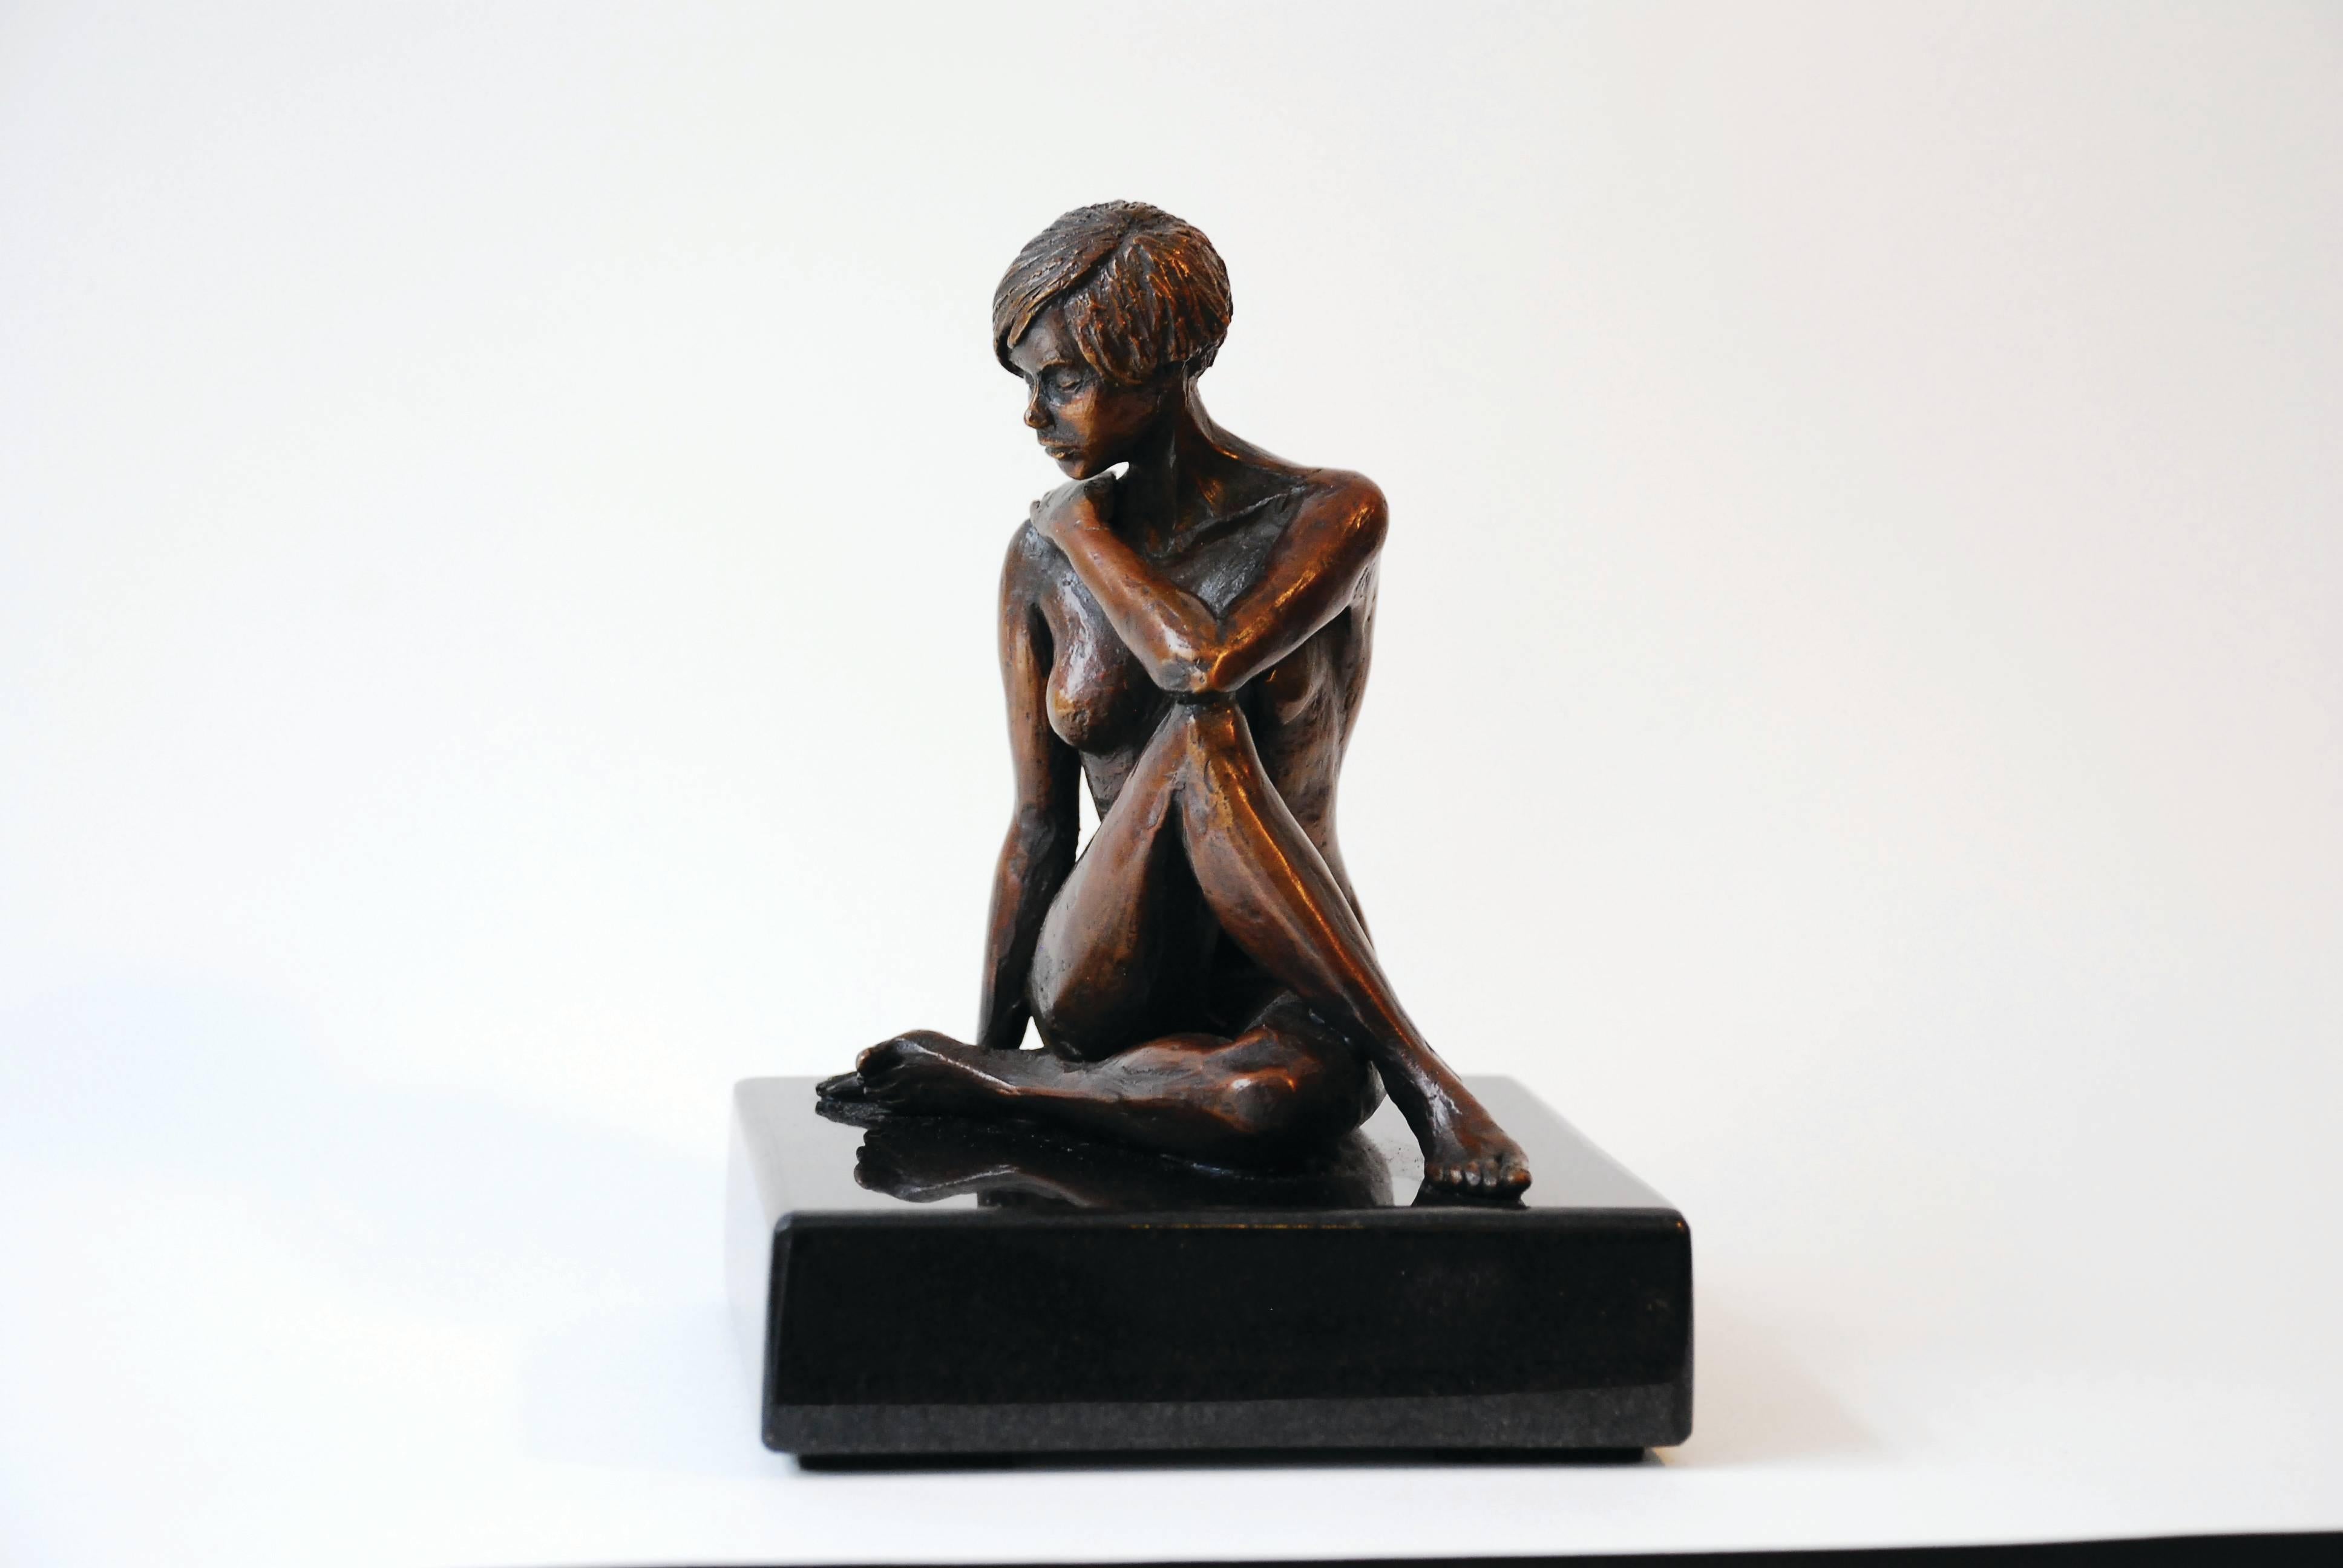 Shazia Imran Nude Sculpture - Ica 1